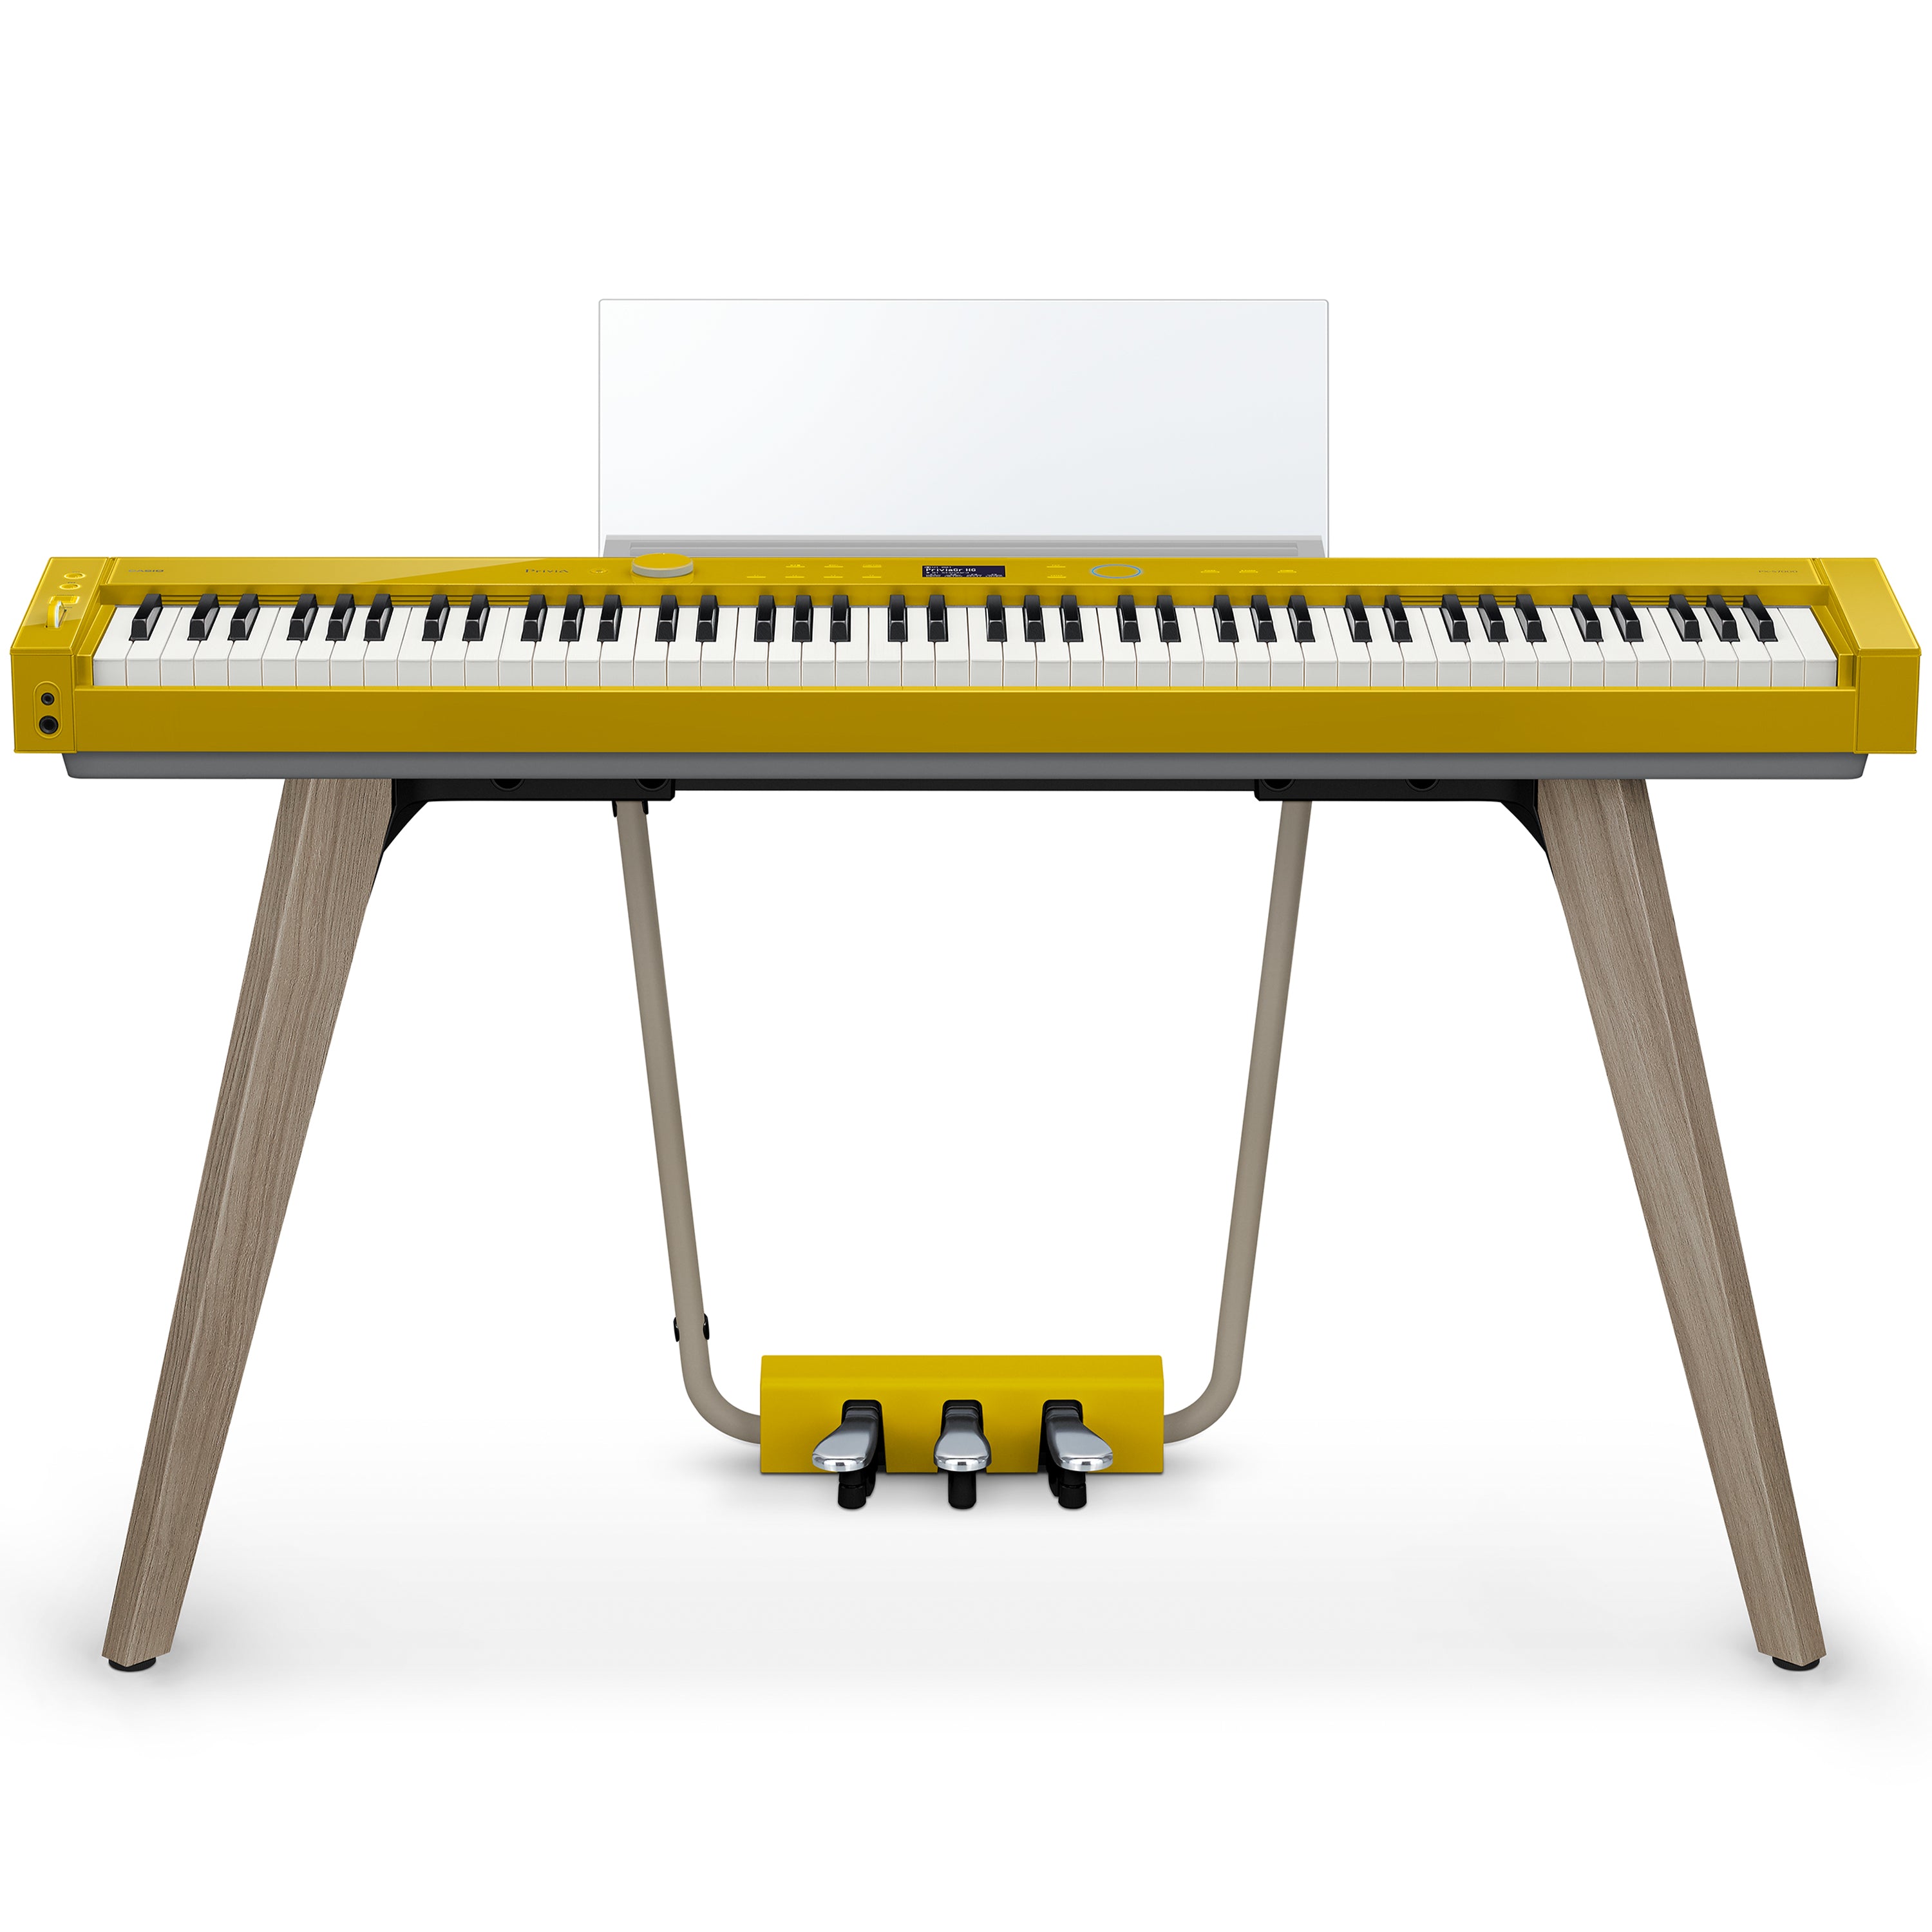 Casio PX-S7000 Digital Piano - Harmonious Mustard – Kraft Music